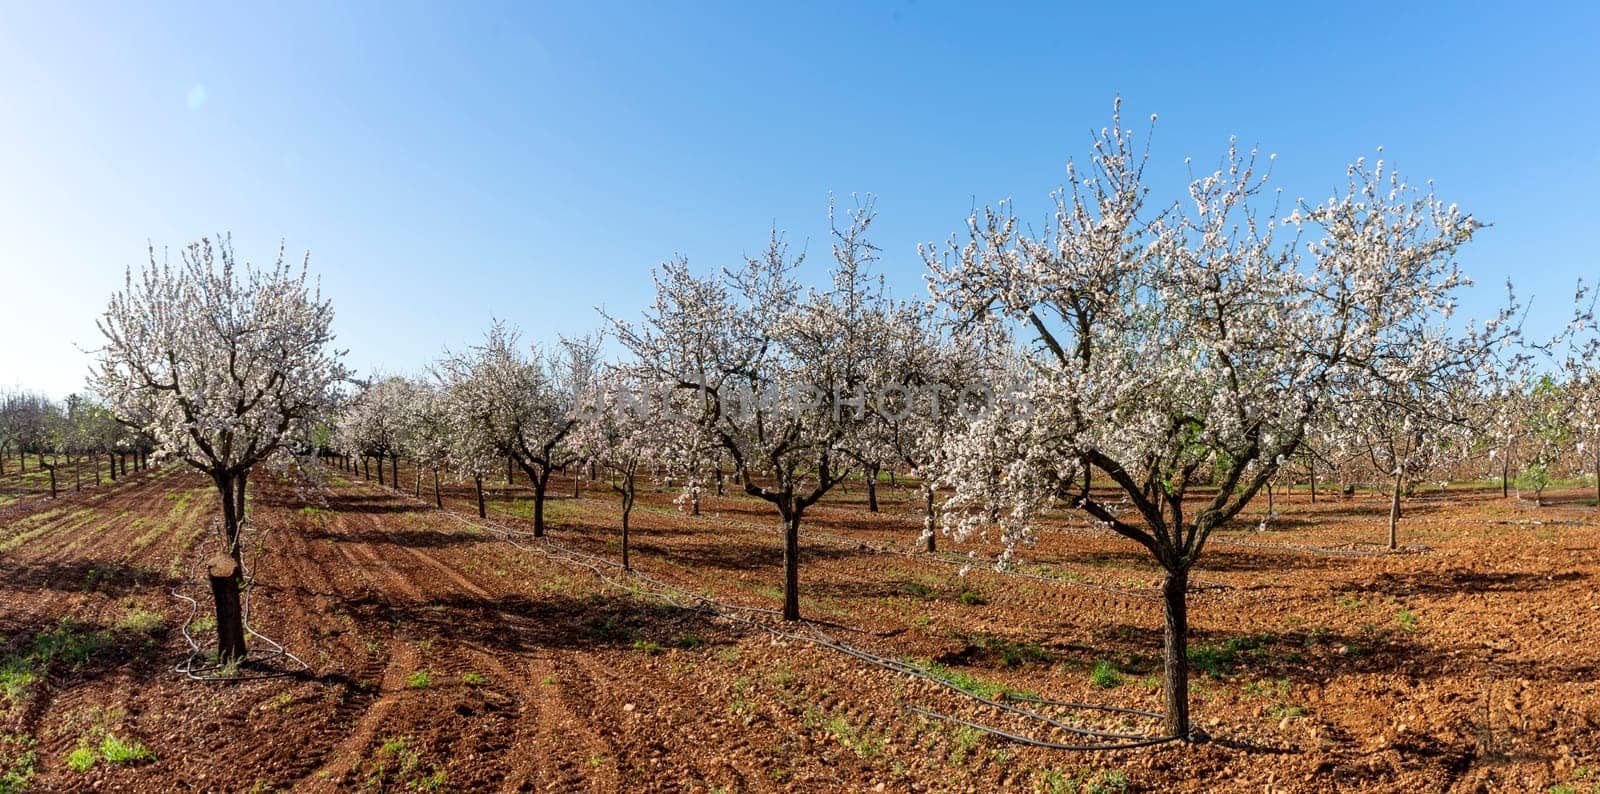 Spring Awakening: Almond Trees Flourishing in the Warm Sunshine by Juanjo39